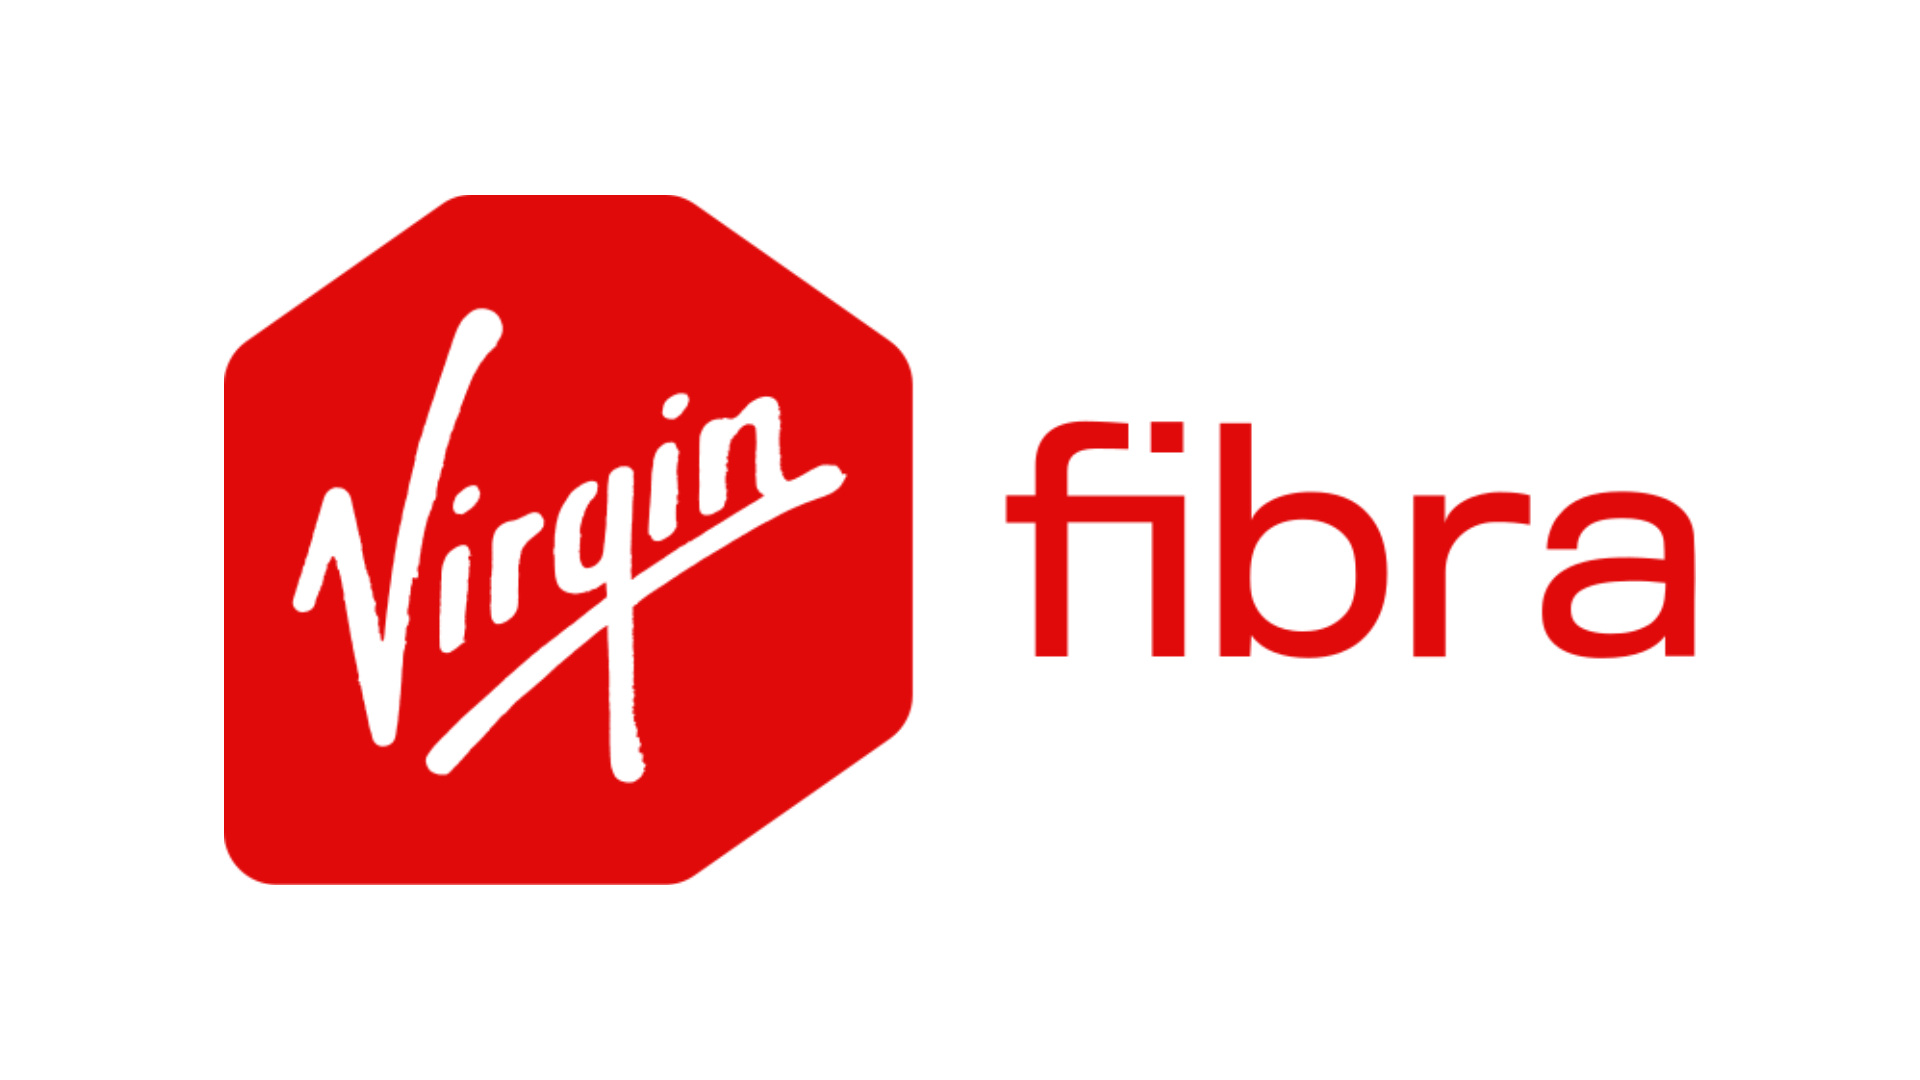 virgin fibra logo